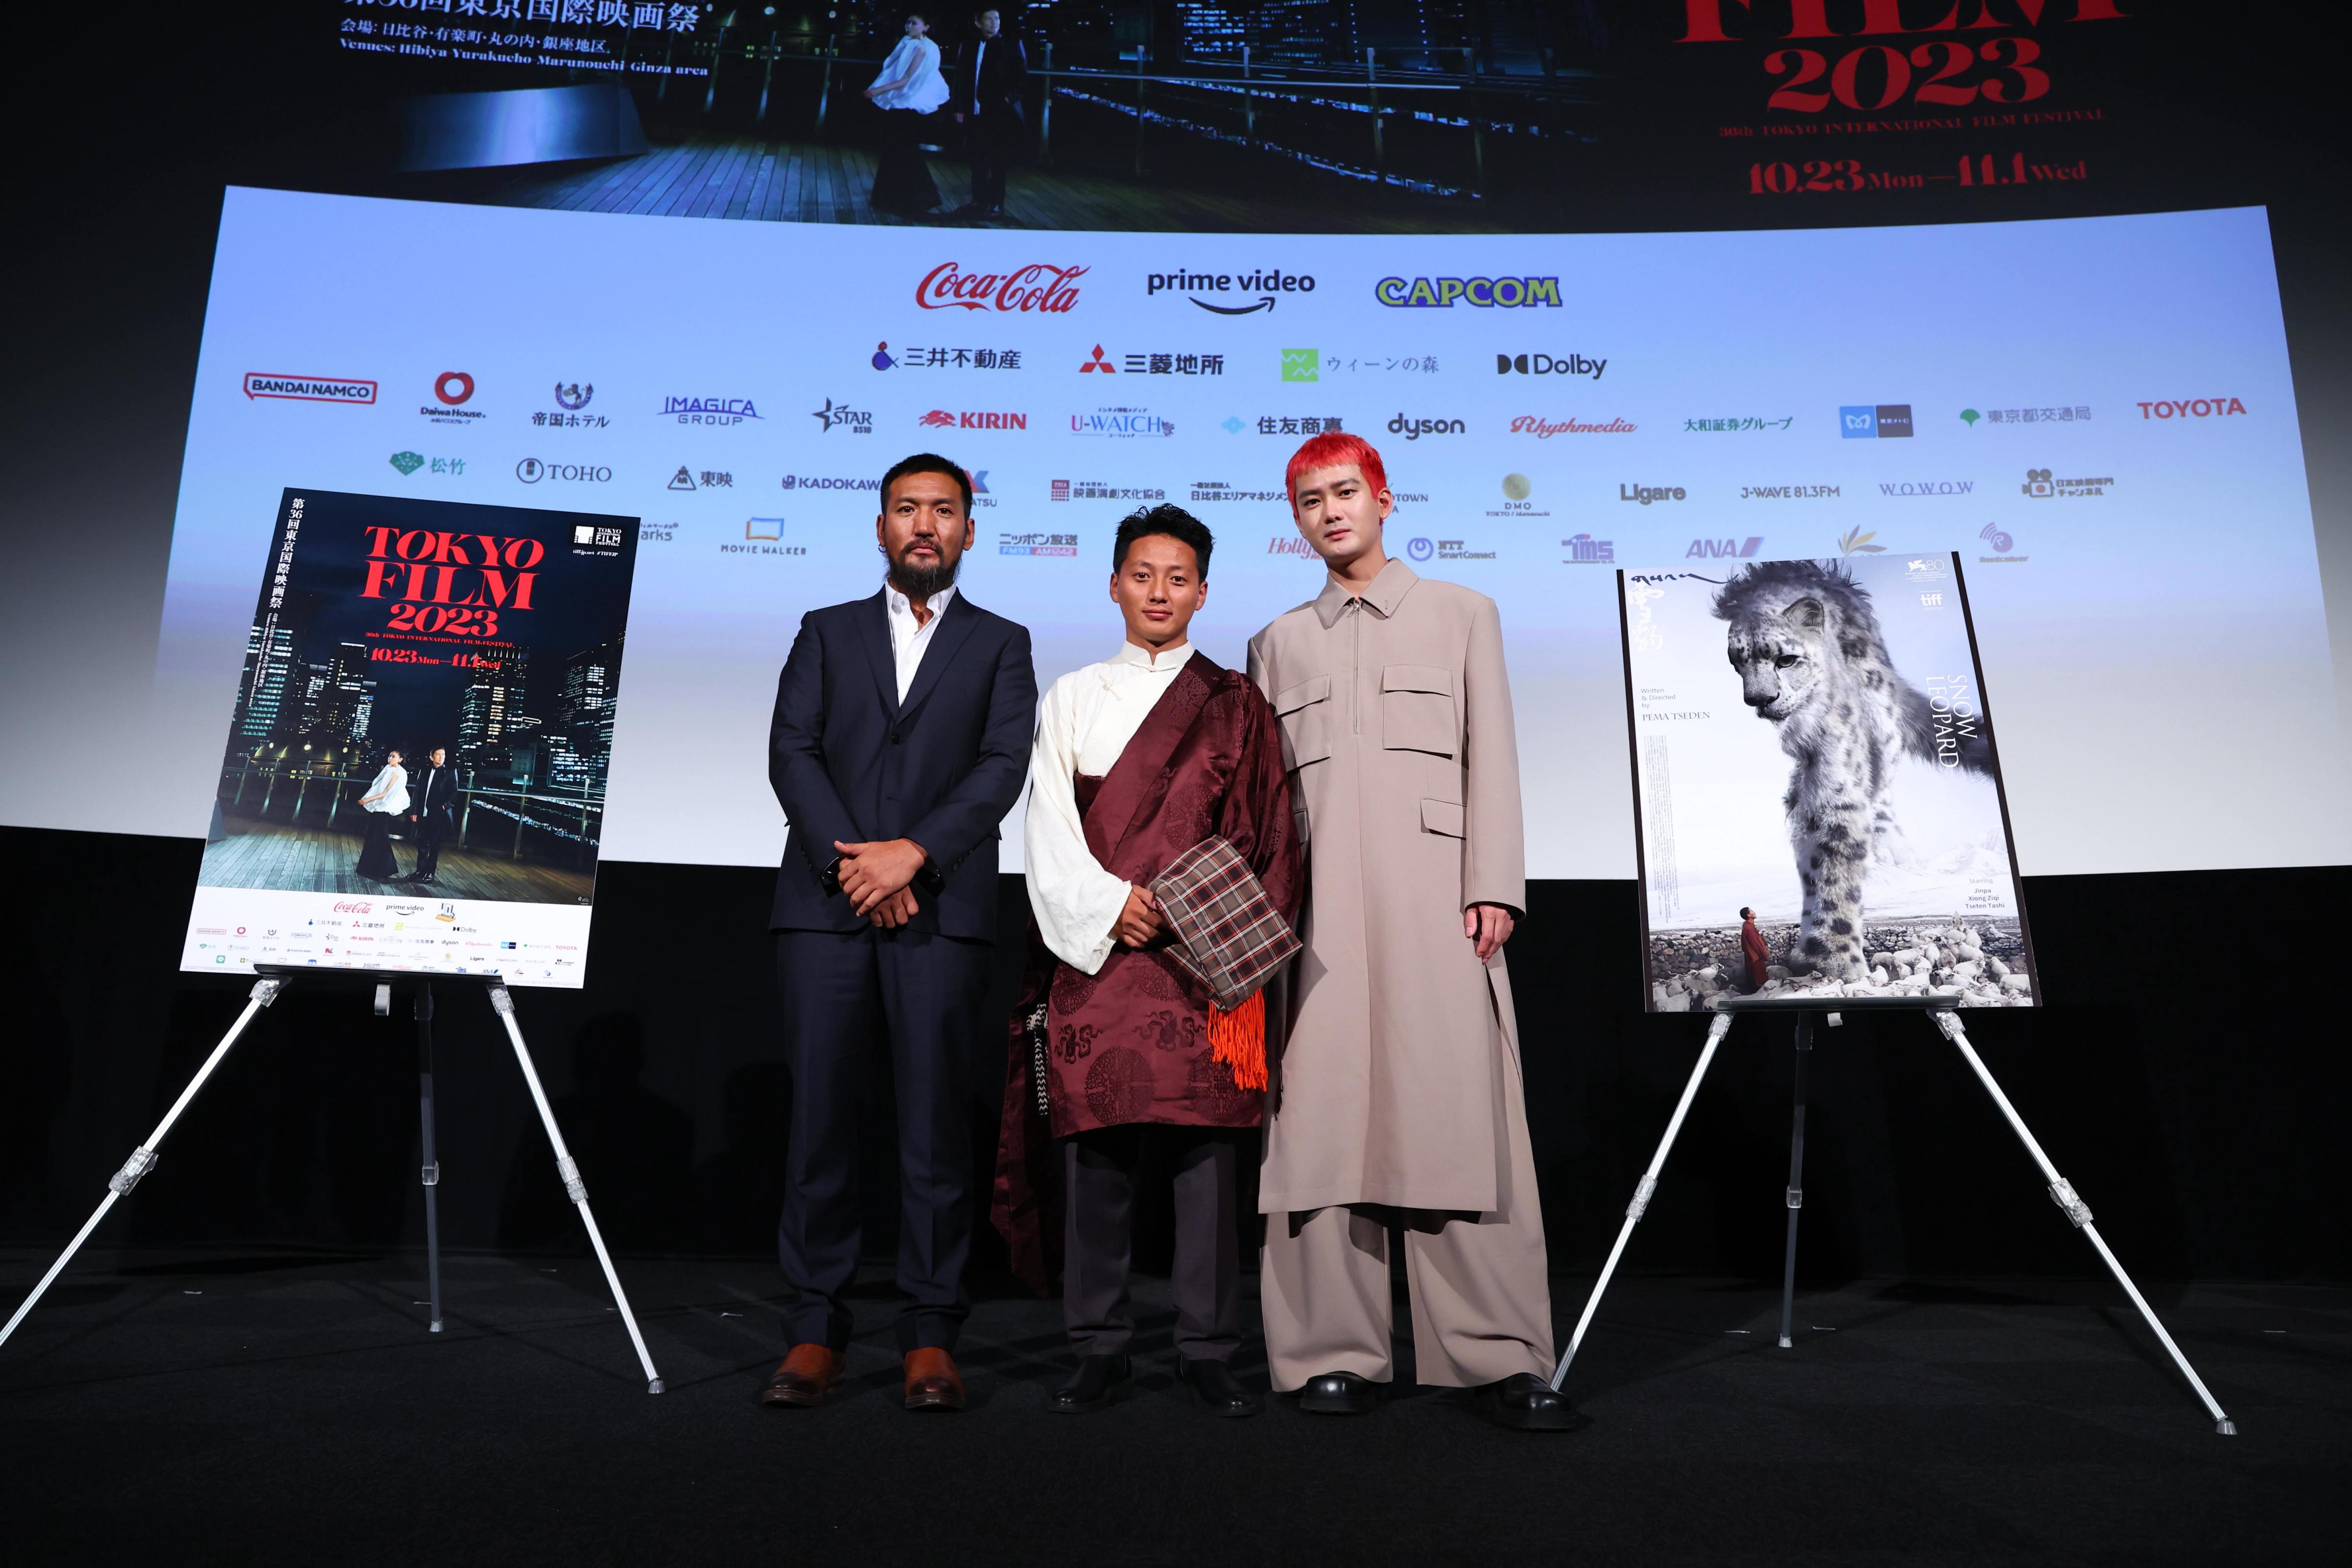 【影視動漫】萬瑪才旦遺作《雪豹》獲東京國際電影節大獎 獨特人文氣質獲盛讚